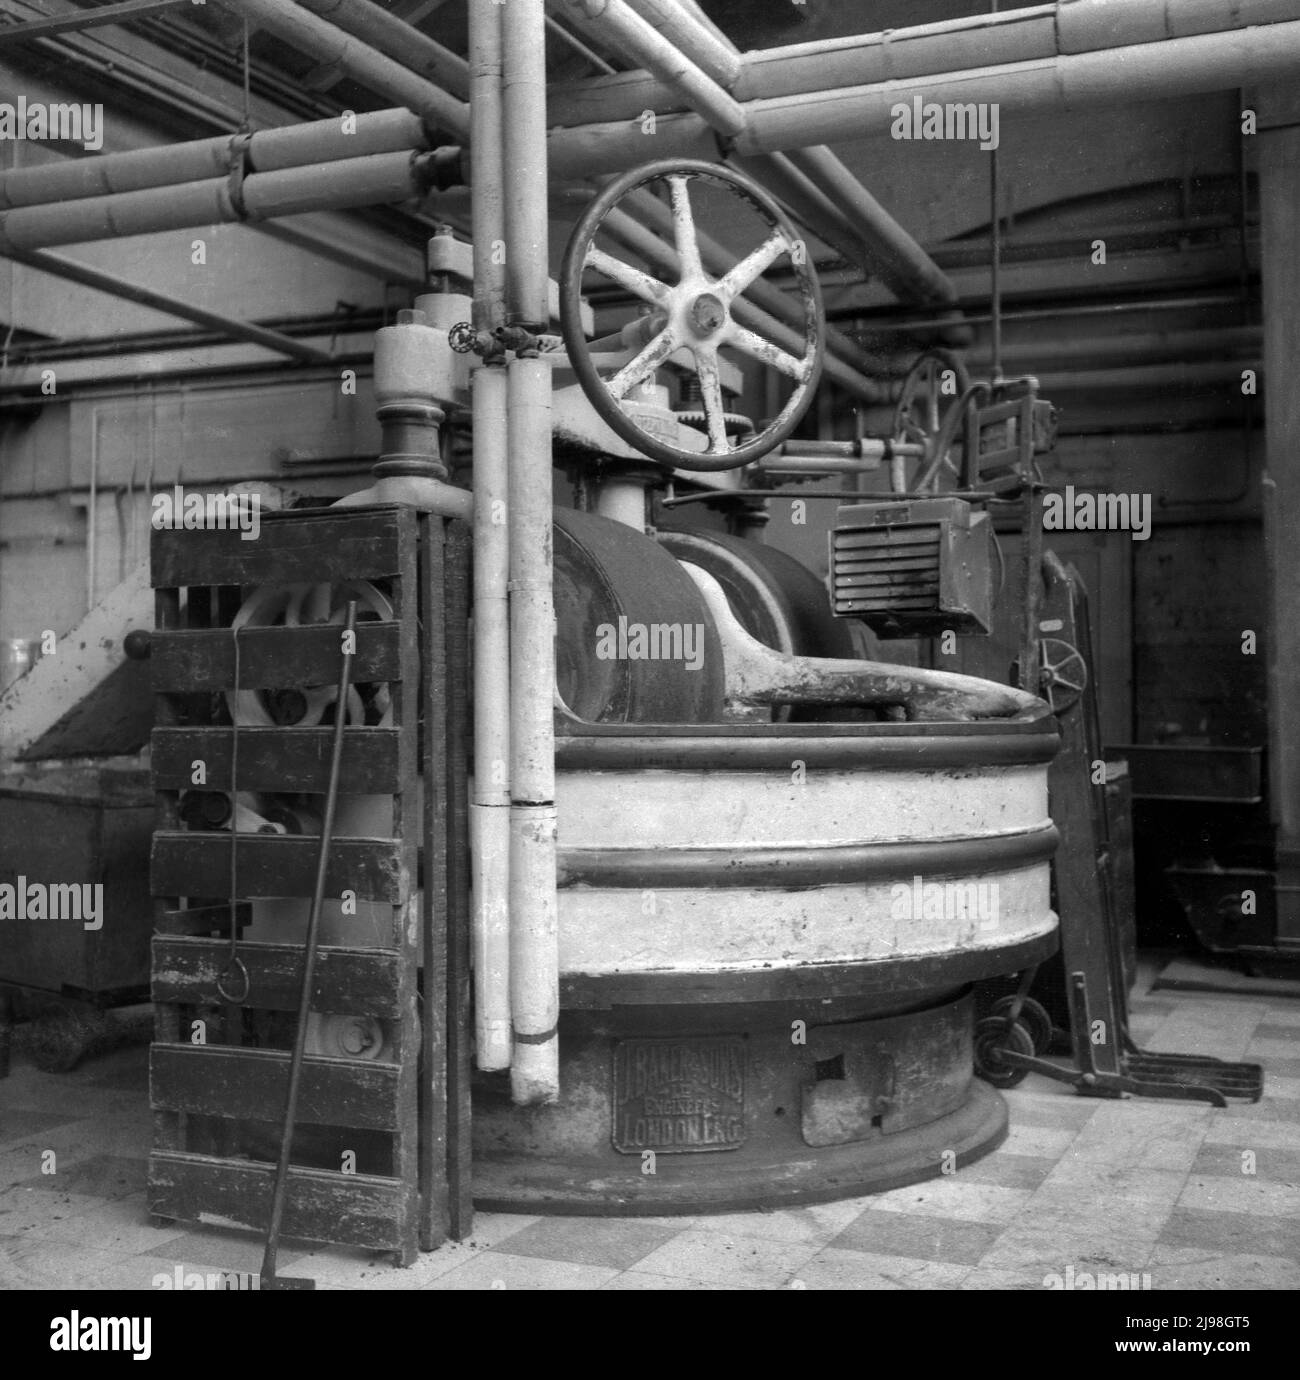 1955, historique, à l'usine de fabrication de confiserie de Fugistals de Stockport, Manchester, Angleterre, Royaume-Uni. Vu est l'équipement de fabrication de l'époque, les machines fabriquées par J Baker & Sons, une société d'ingénierie britannique spécialisée dans la fabrication de machines et de fours, pour la fabrication de biscuits, de pain, de gâteaux, de chocolat et de confiseries. Banque D'Images